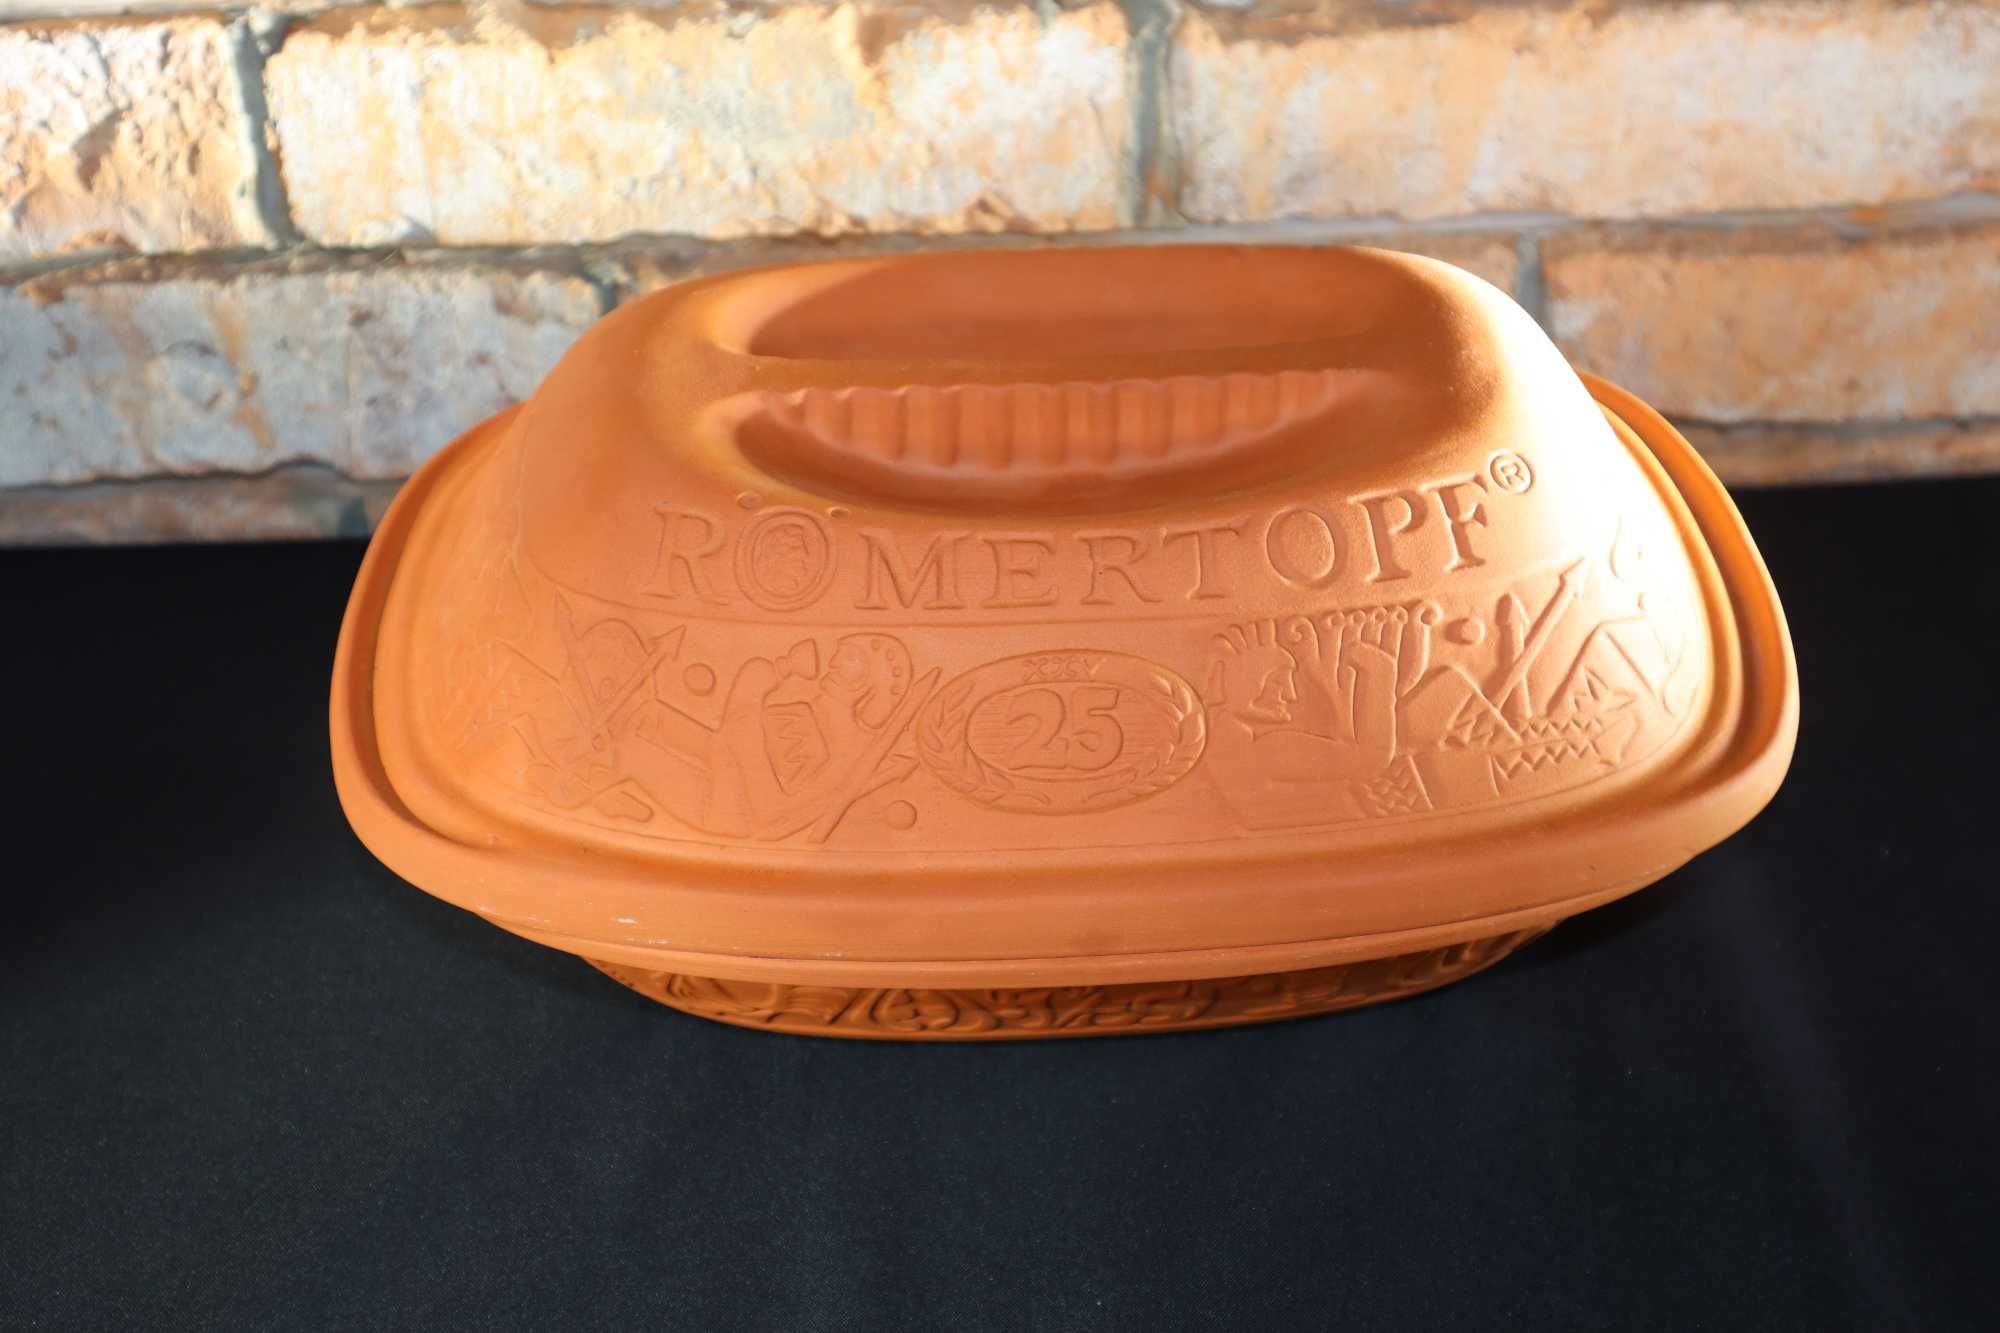 Römertopf Klasyczny ceramiczny garnek do pieczenia garnek Rzymski b041